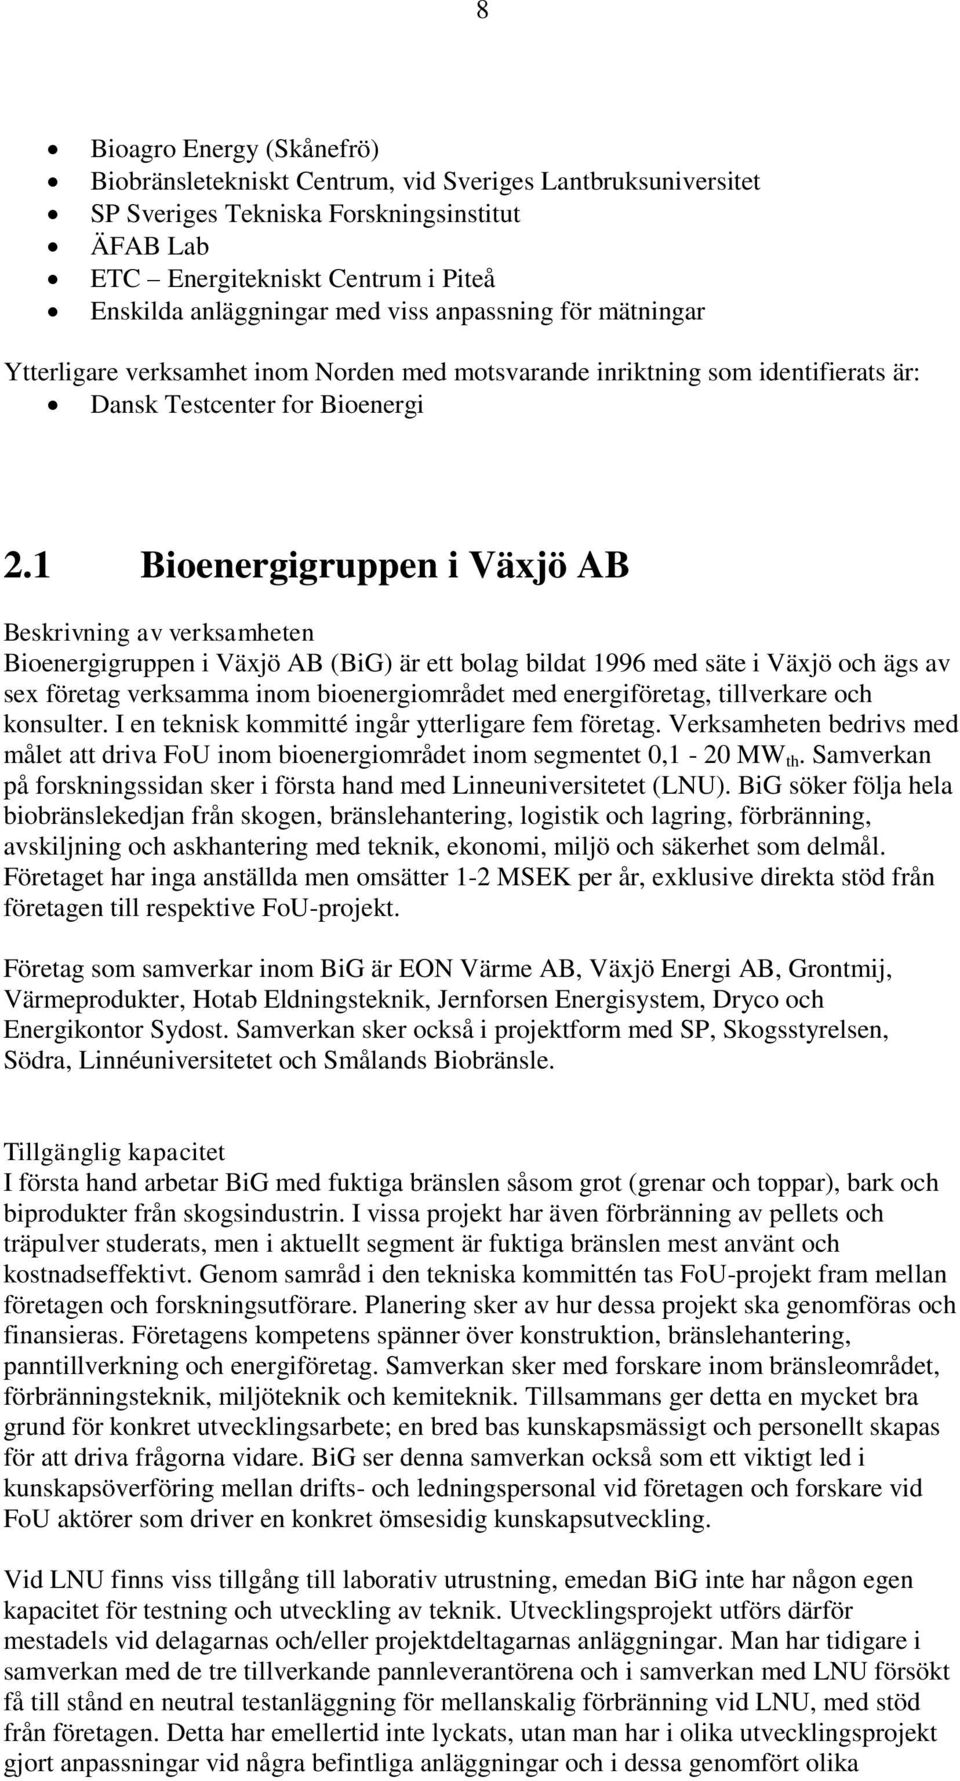 1 Bioenergigruppen i Växjö AB Beskrivning av verksamheten Bioenergigruppen i Växjö AB (BiG) är ett bolag bildat 1996 med säte i Växjö och ägs av sex företag verksamma inom bioenergiområdet med